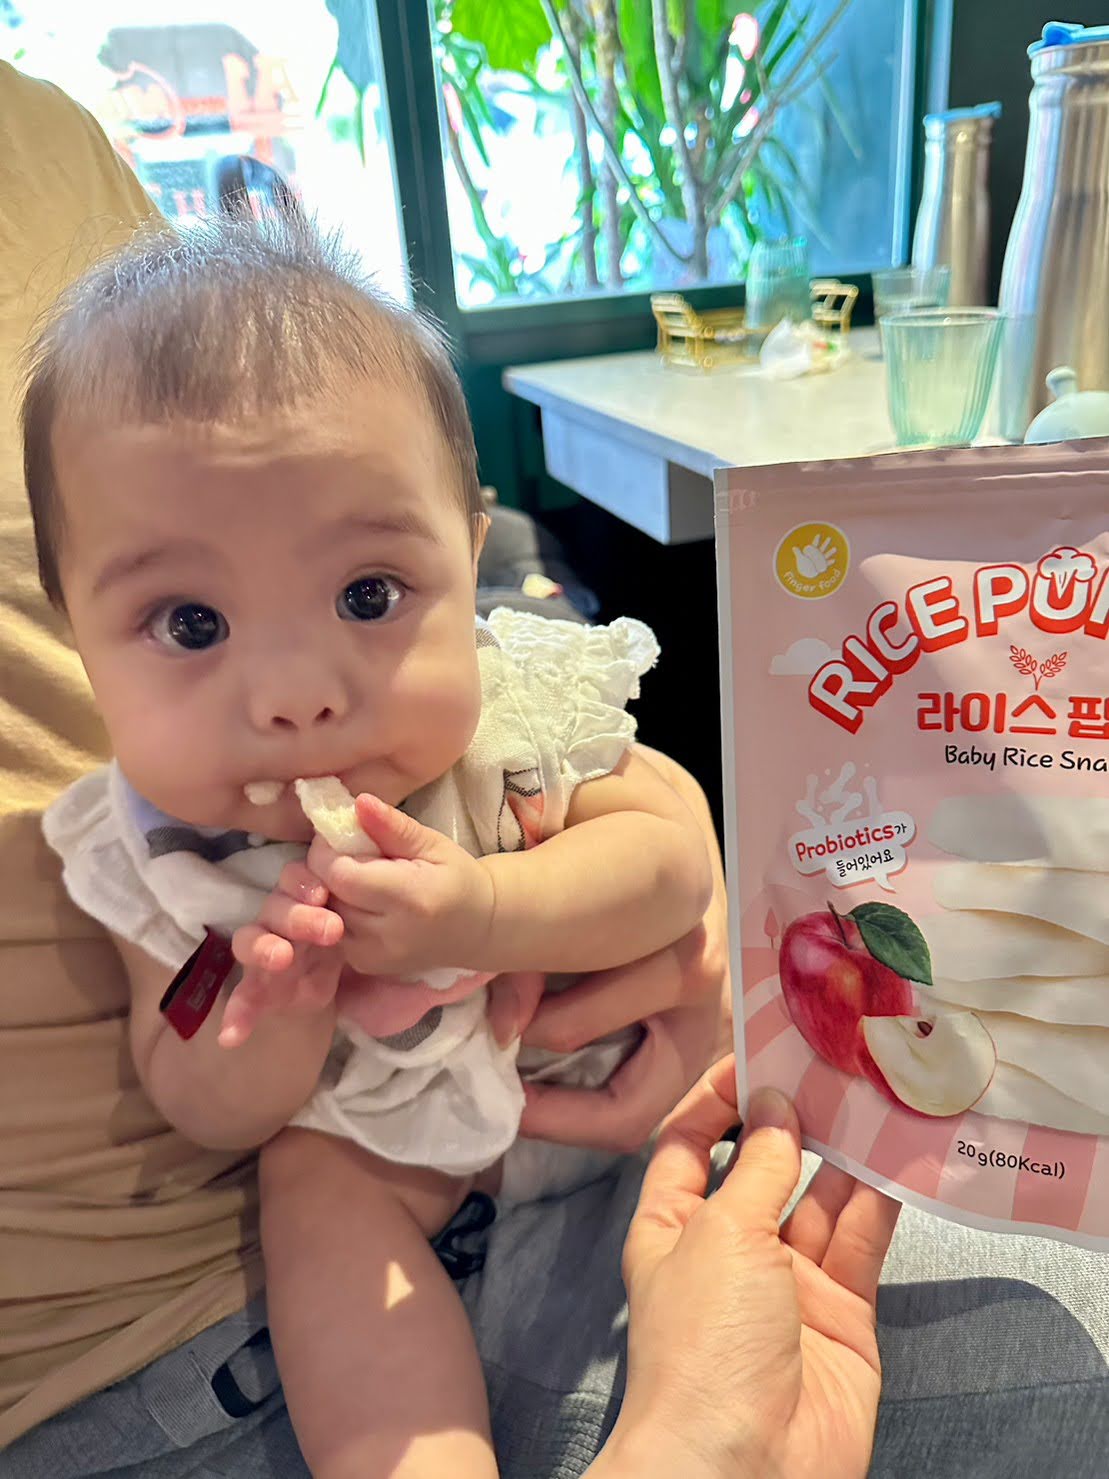 寶寶米餅團購 dcard推薦 哪裡買ptt 韓國AGA-AE益生菌寶寶米餅/優格球 育兒好物